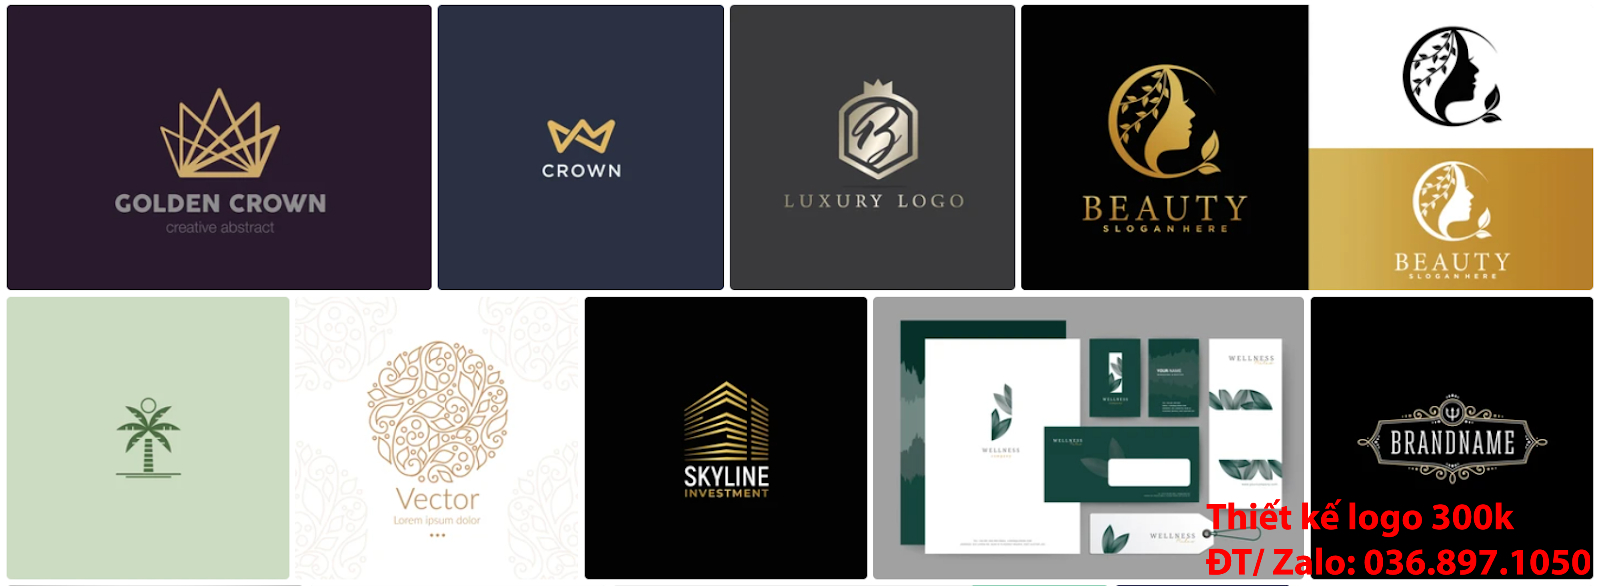 Công ty nhận thiết kế các Mẫu logo đẹp khách sạn resort nhà nghỉ sáng tạo chuyên nghiệp giá rẻ tại Hà Nội